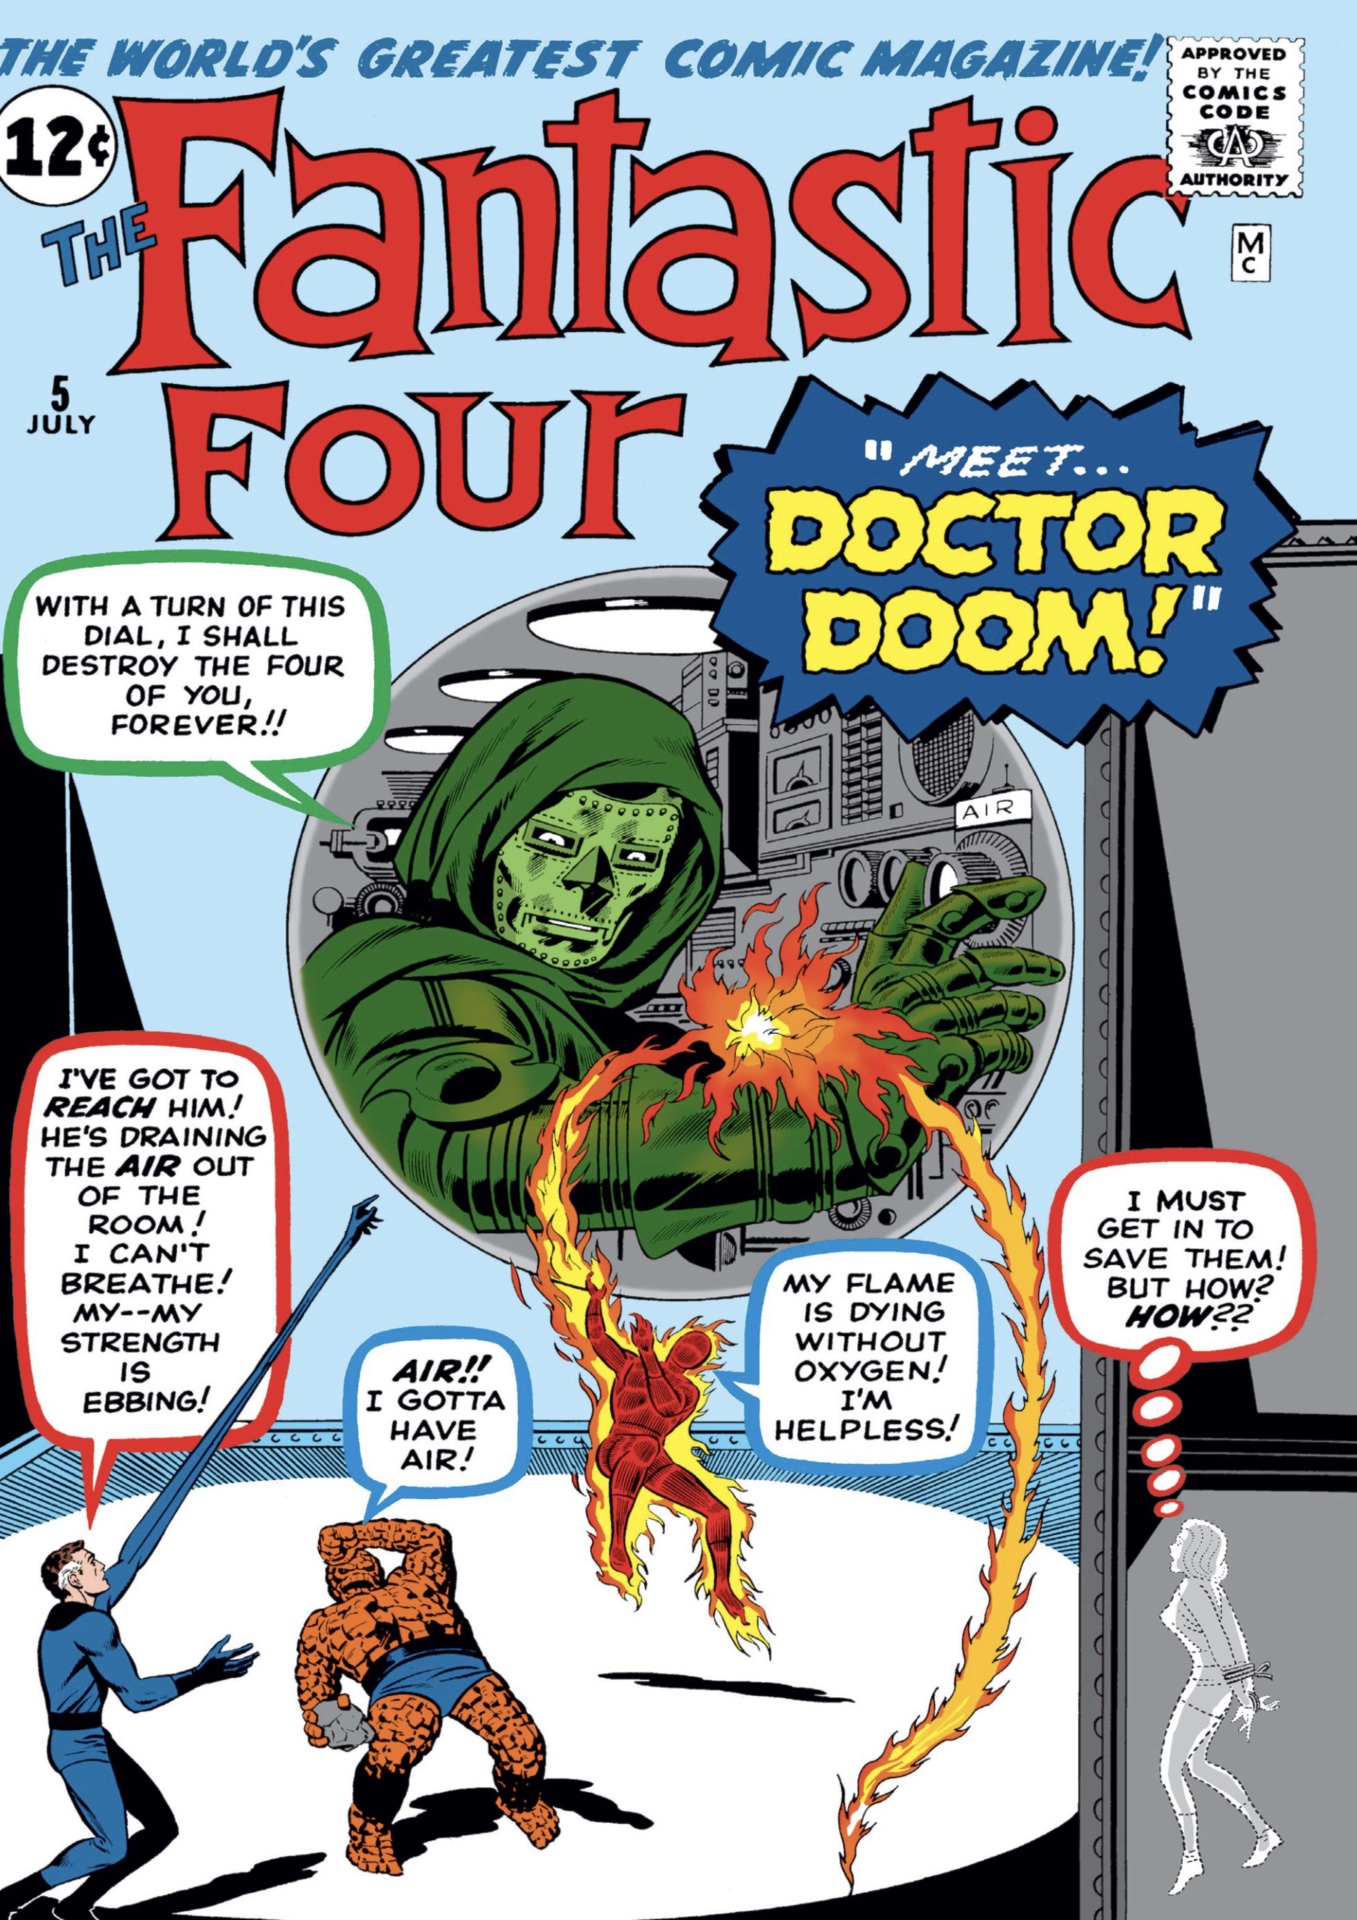 Doctor Doom in den Marvel-Comics